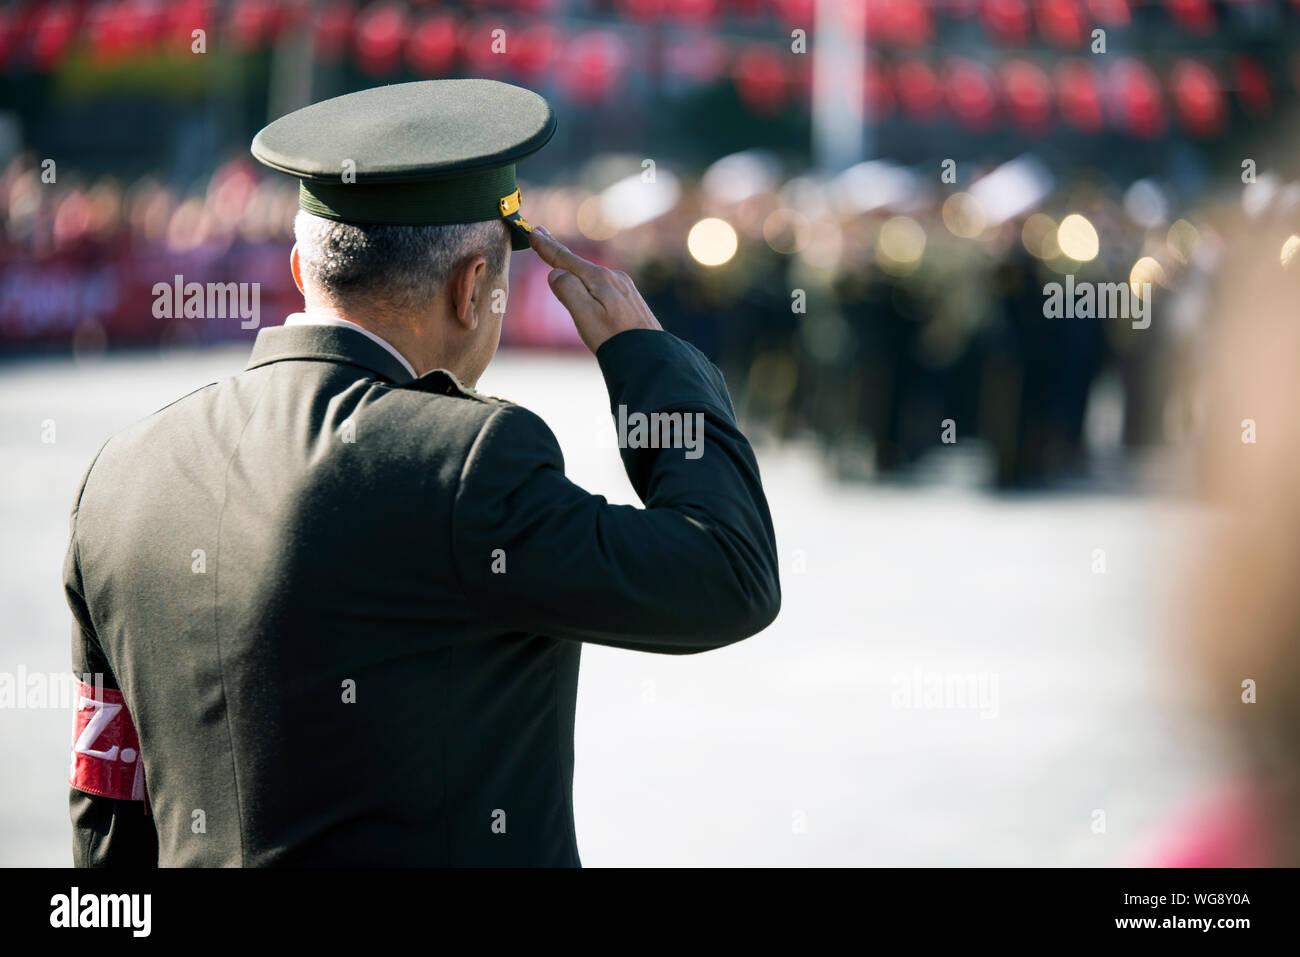 Izmir, Türkei - 29 Oktober, 2019: Commander in formalen Uniform begrüßt von der Rückseite anzuzeigen. Stockfoto